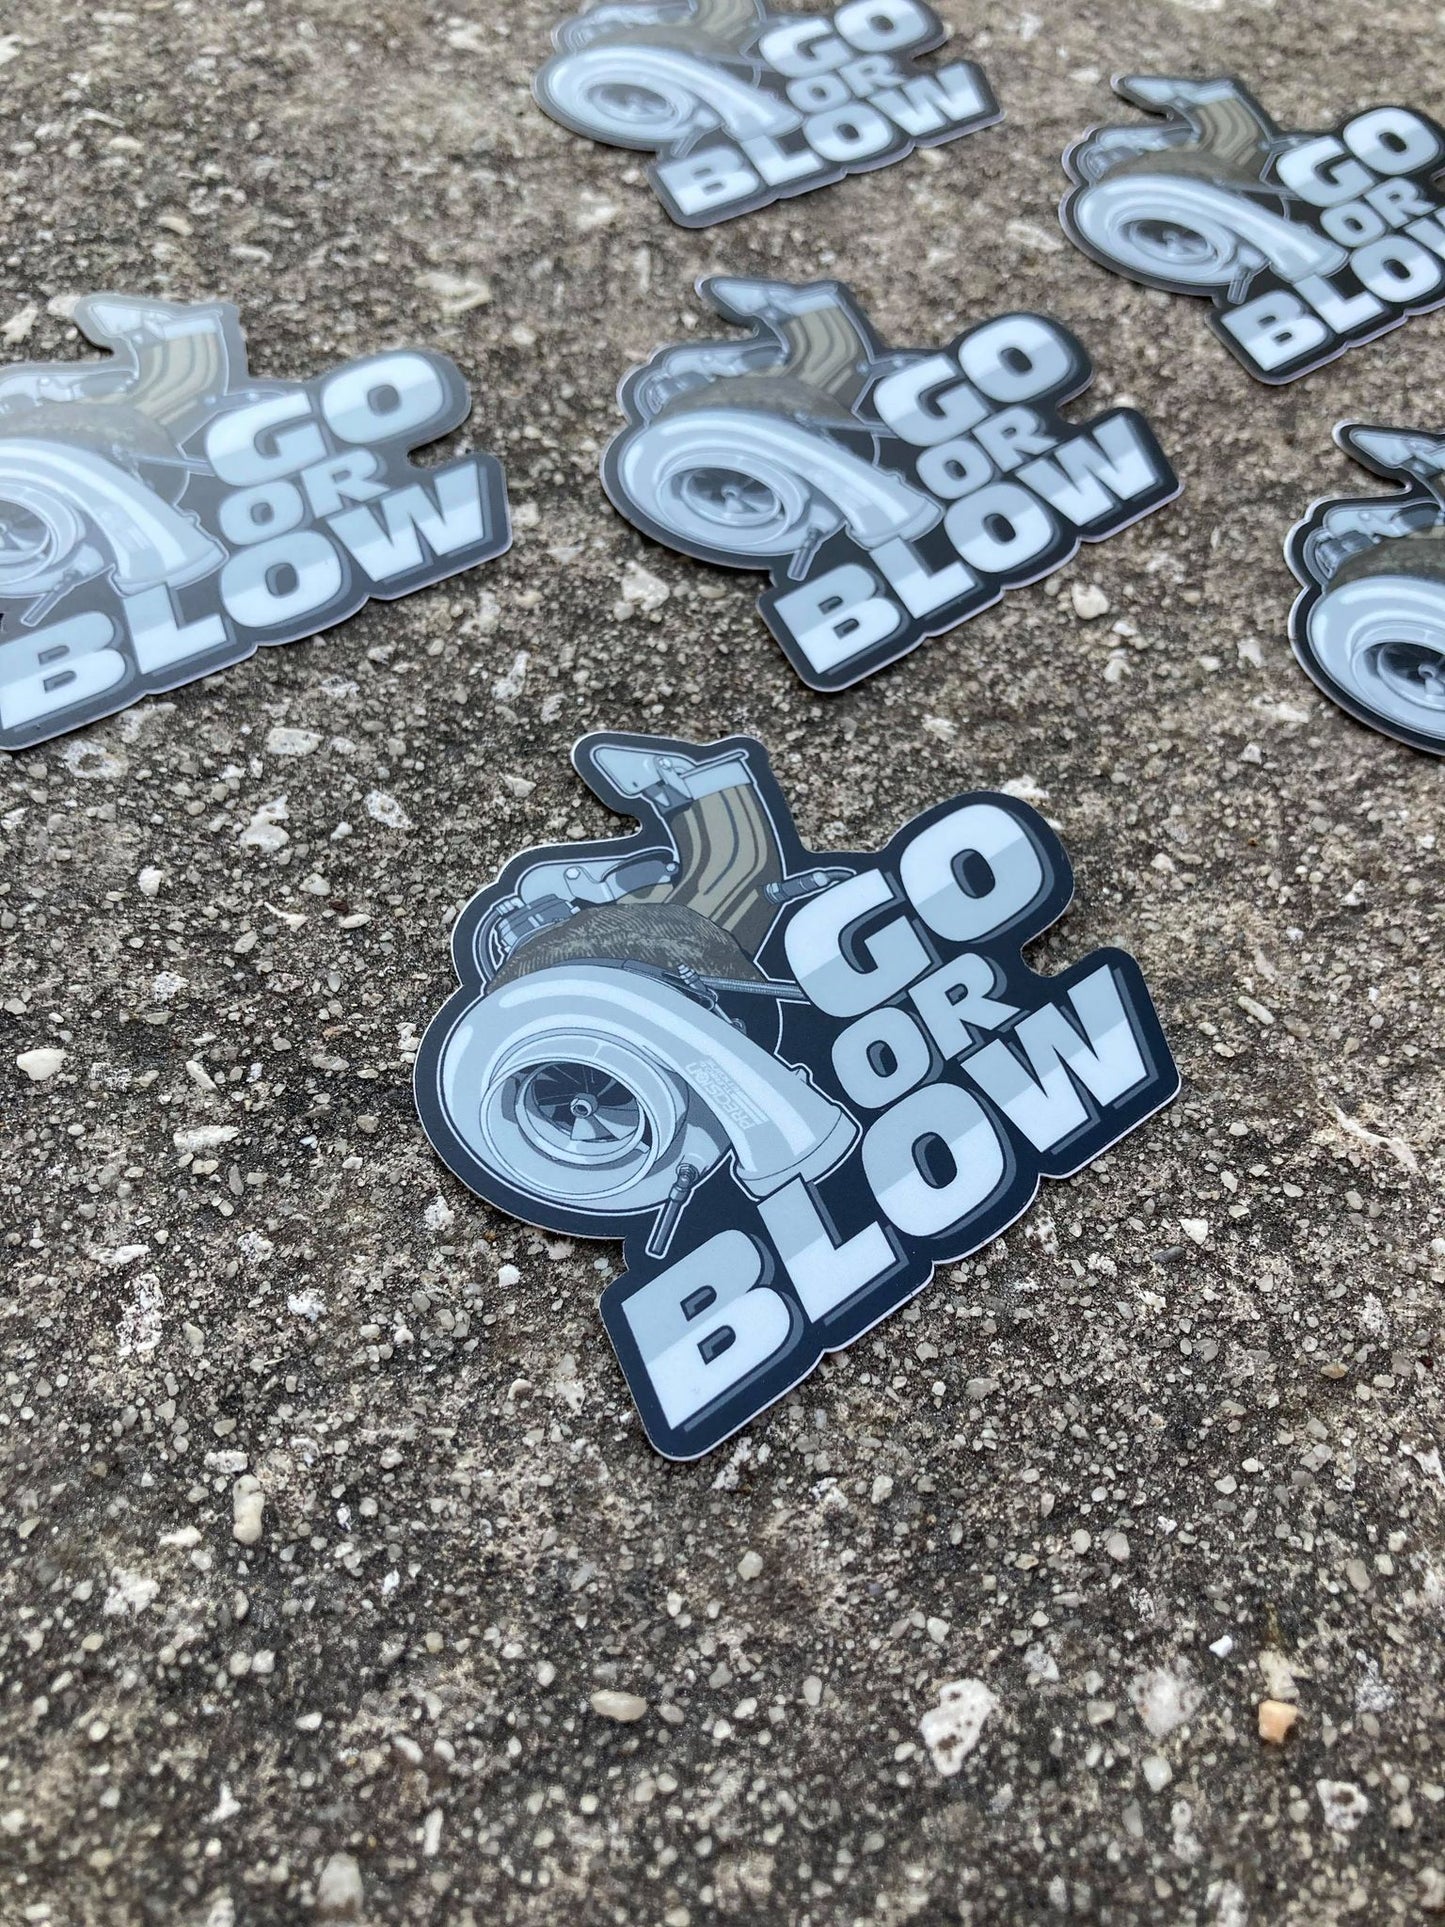 Go or Blow Sticker